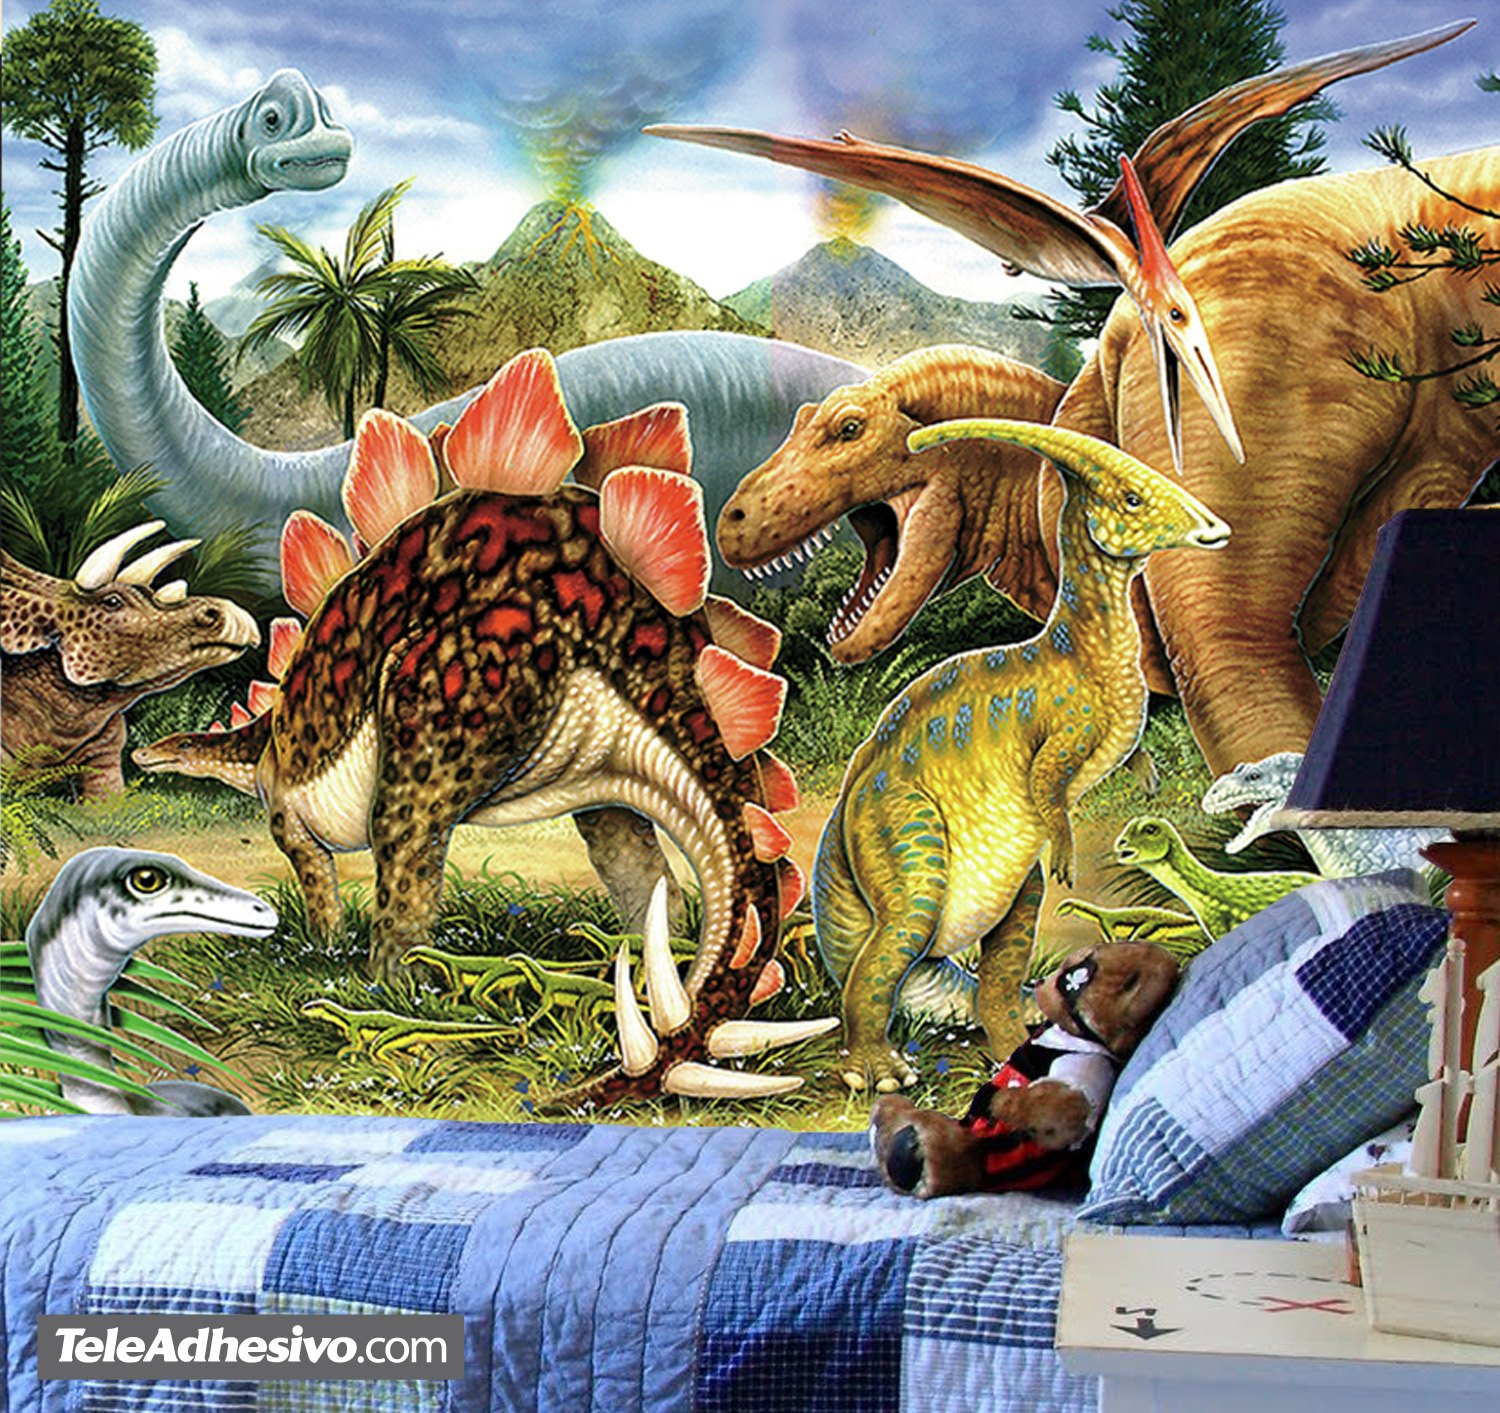 Wall Murals: Dinosaurs